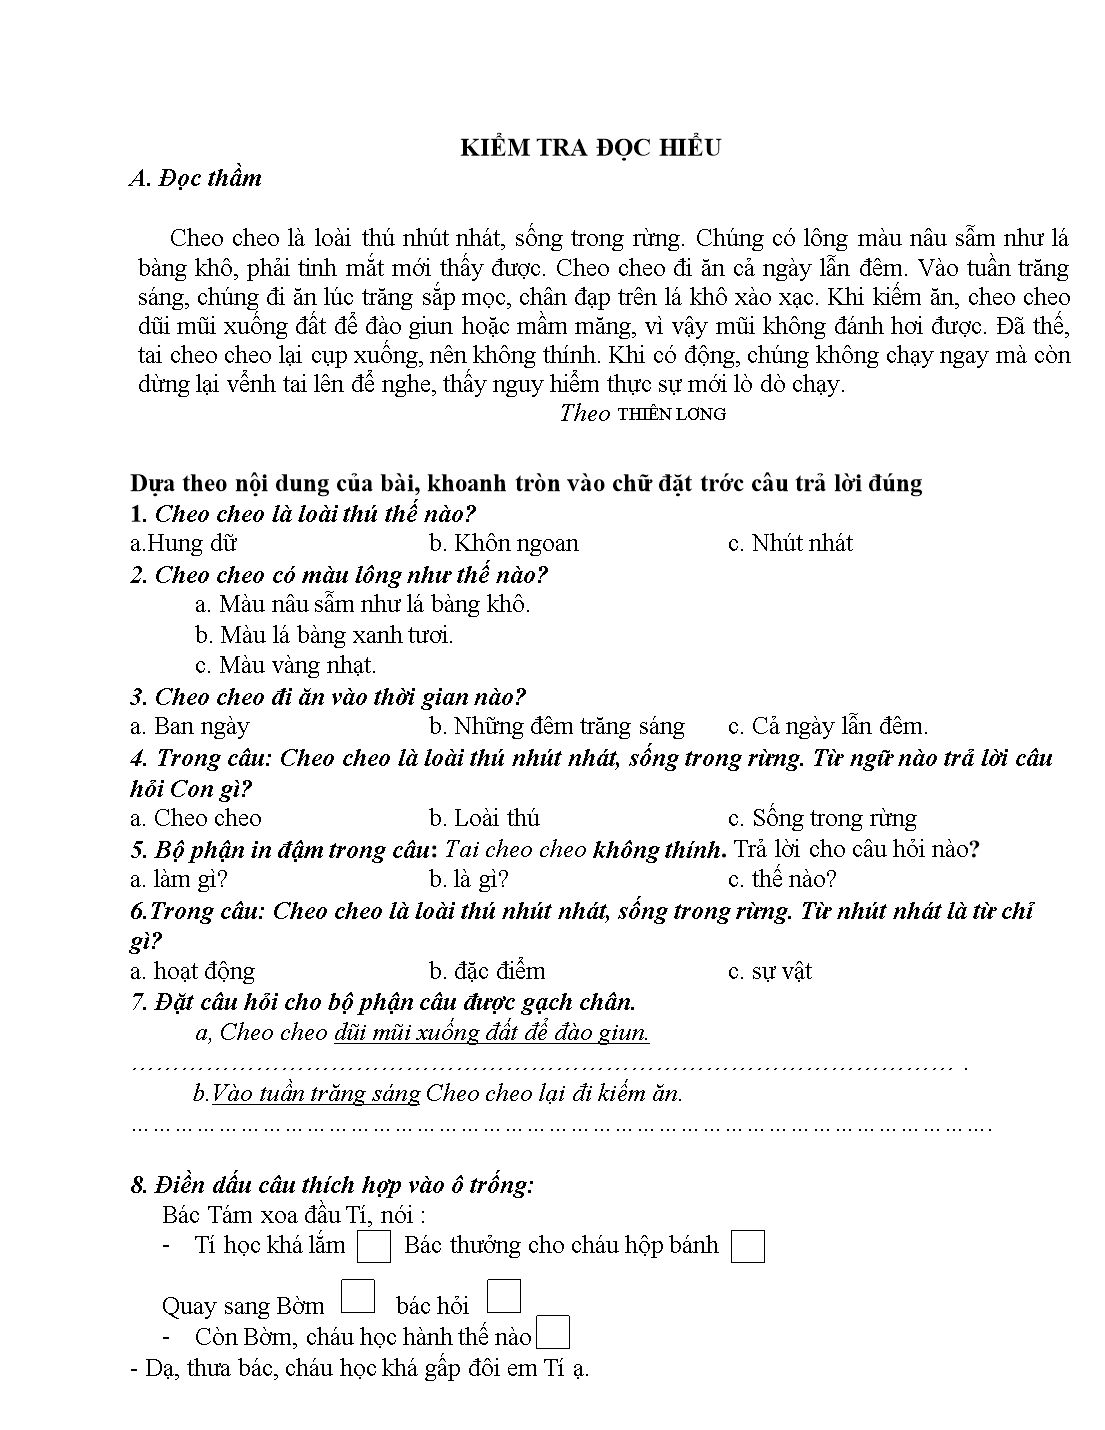 Phiếu bài tập cuối tuần lớp 2 - Tuần 20 - Môn: Toán + Tiếng Việt trang 8